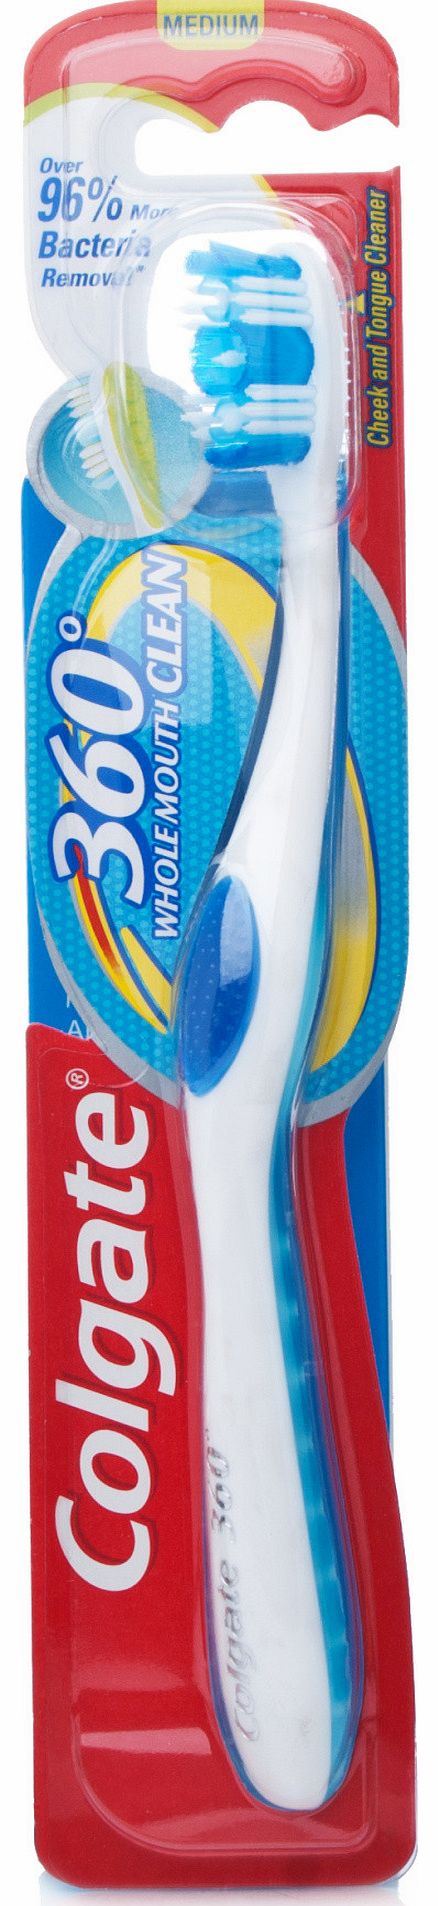 360 Deep Clean Toothbrush Medium